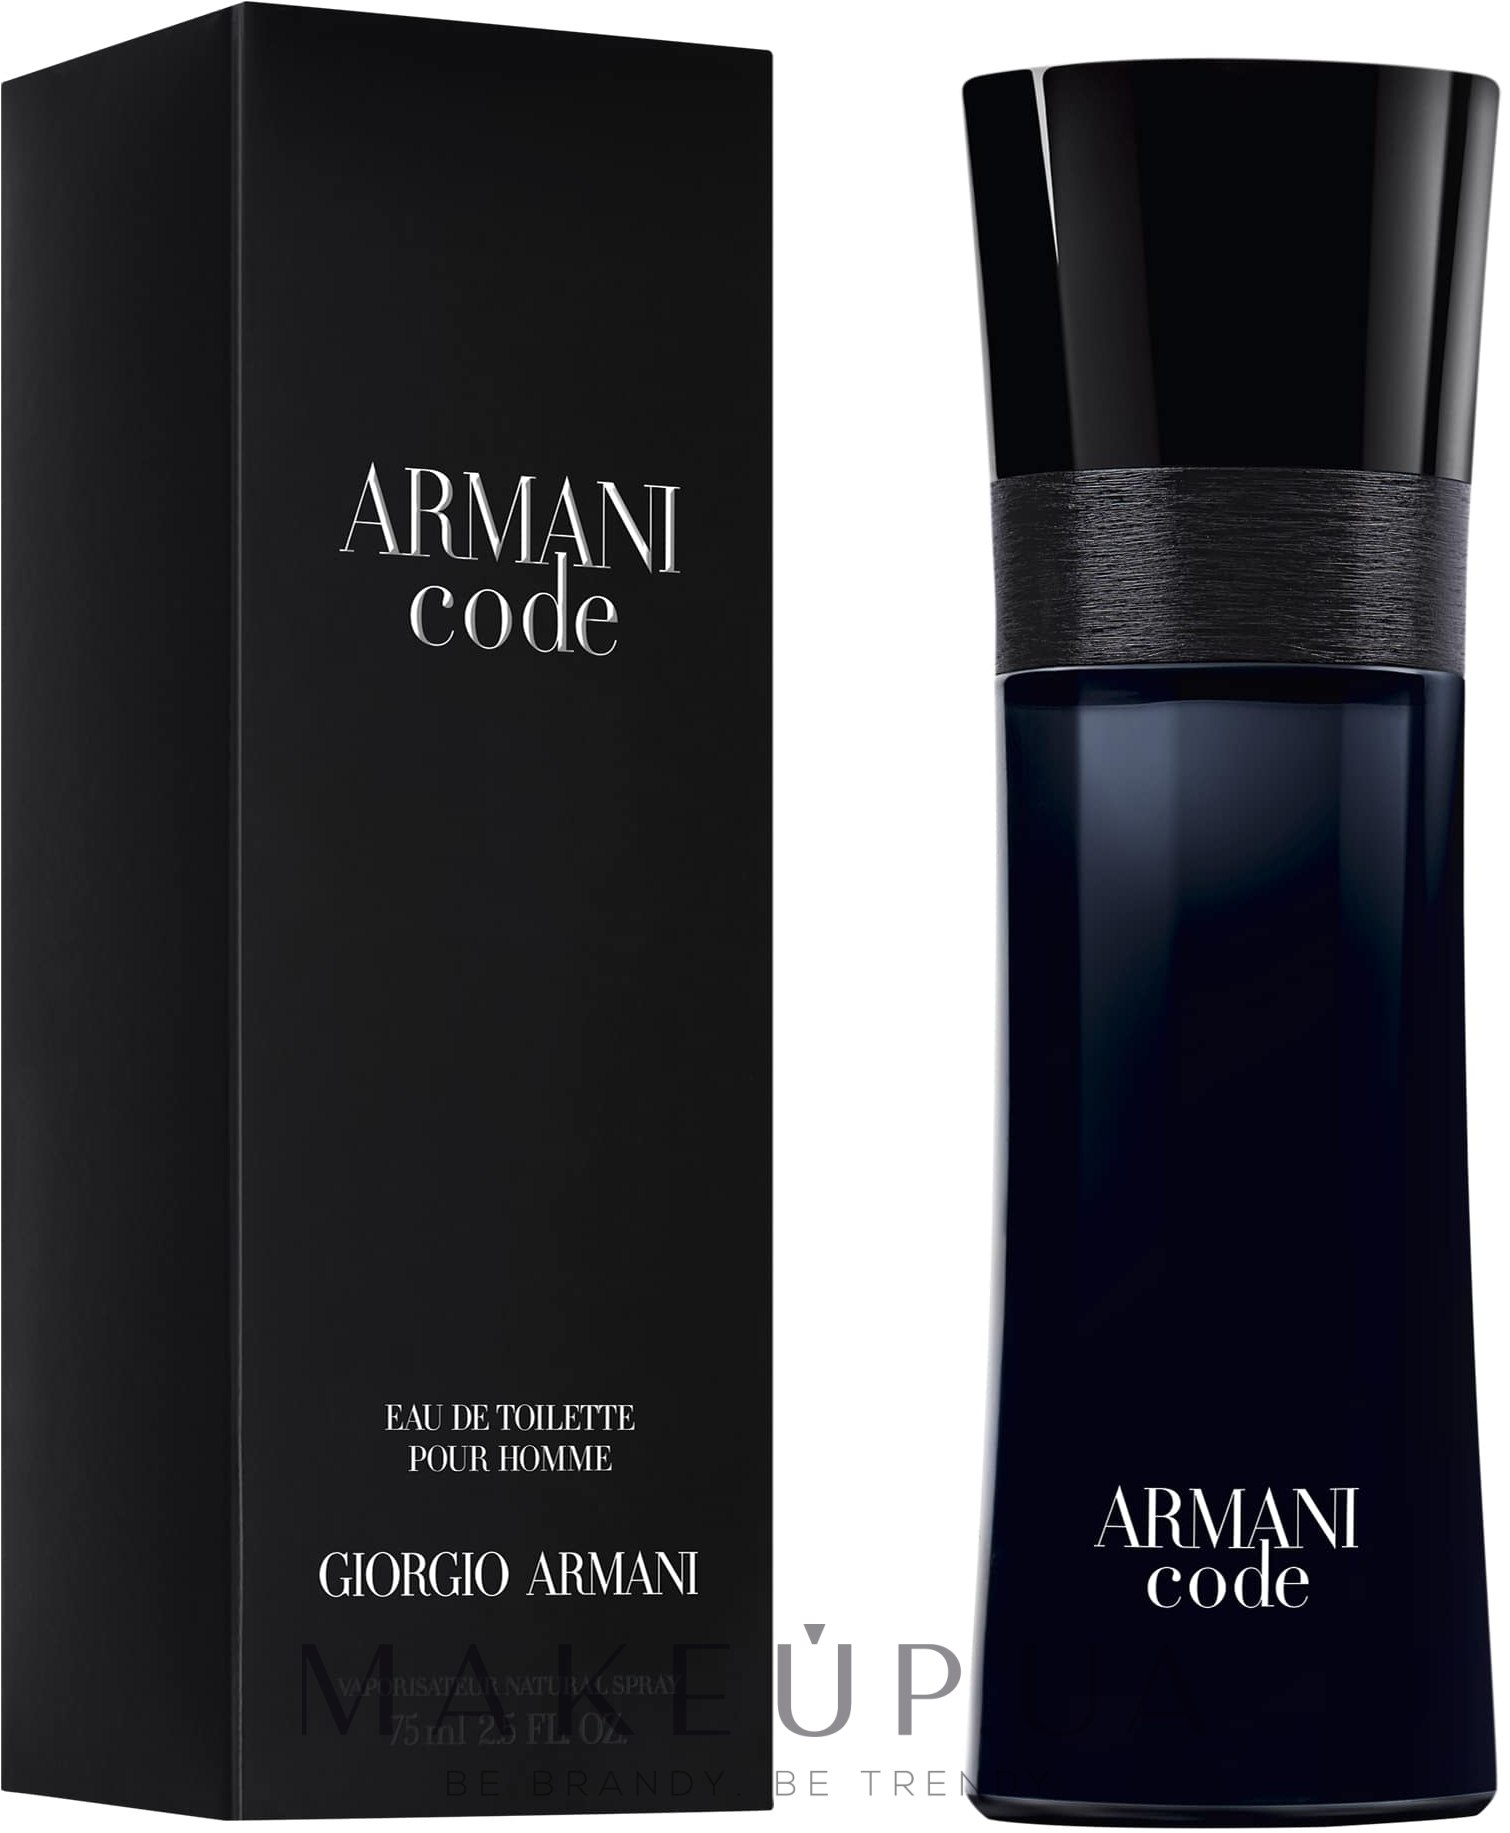 Armani code homme. Giorgio Armani code pour homme 125ml. Armani Black code Giorgio Armani. Armani code Parfum Giorgio Armani. Armani code for women Giorgio Armani.